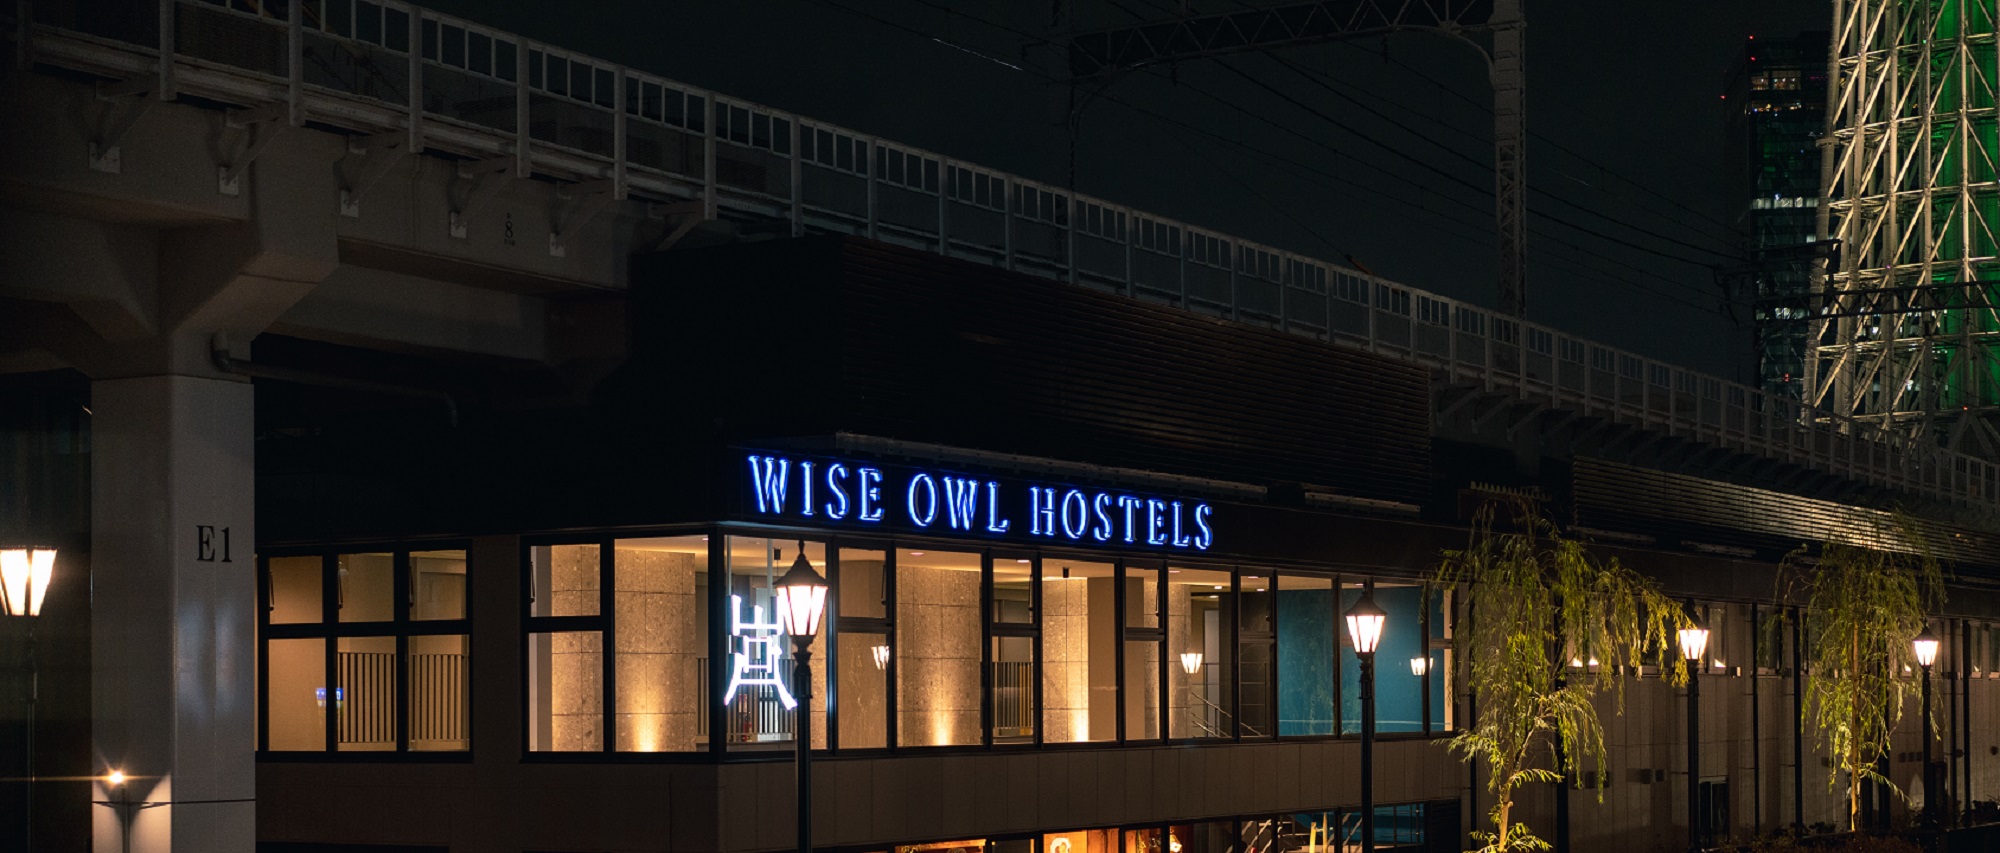 WISE OWL HOSTELS RIVER TOKYO image